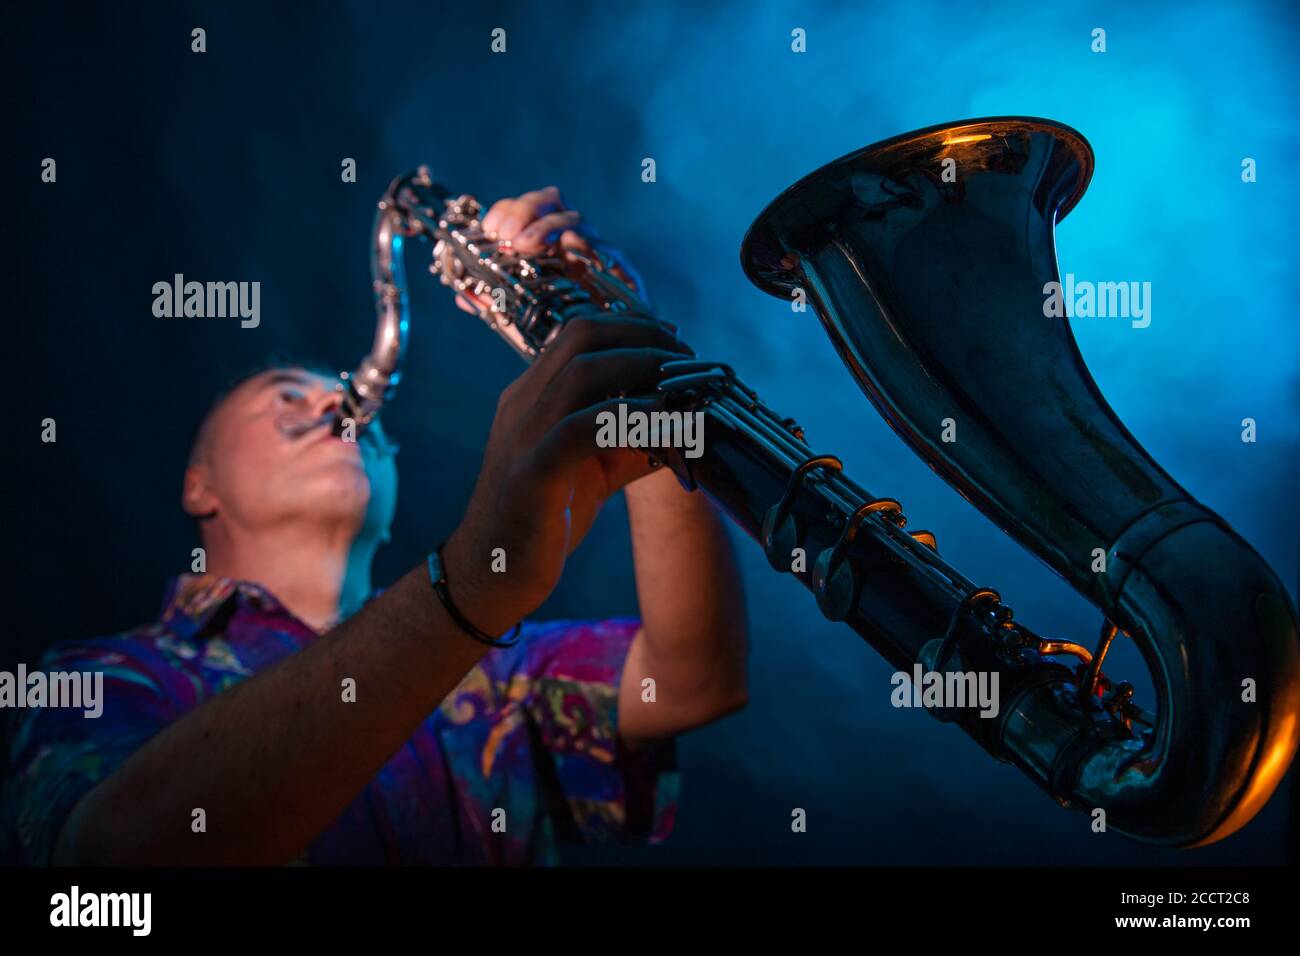 Un uomo suona il clarinetto basso grande. Studio, sfondo scuro. Foto di alta qualità Foto Stock